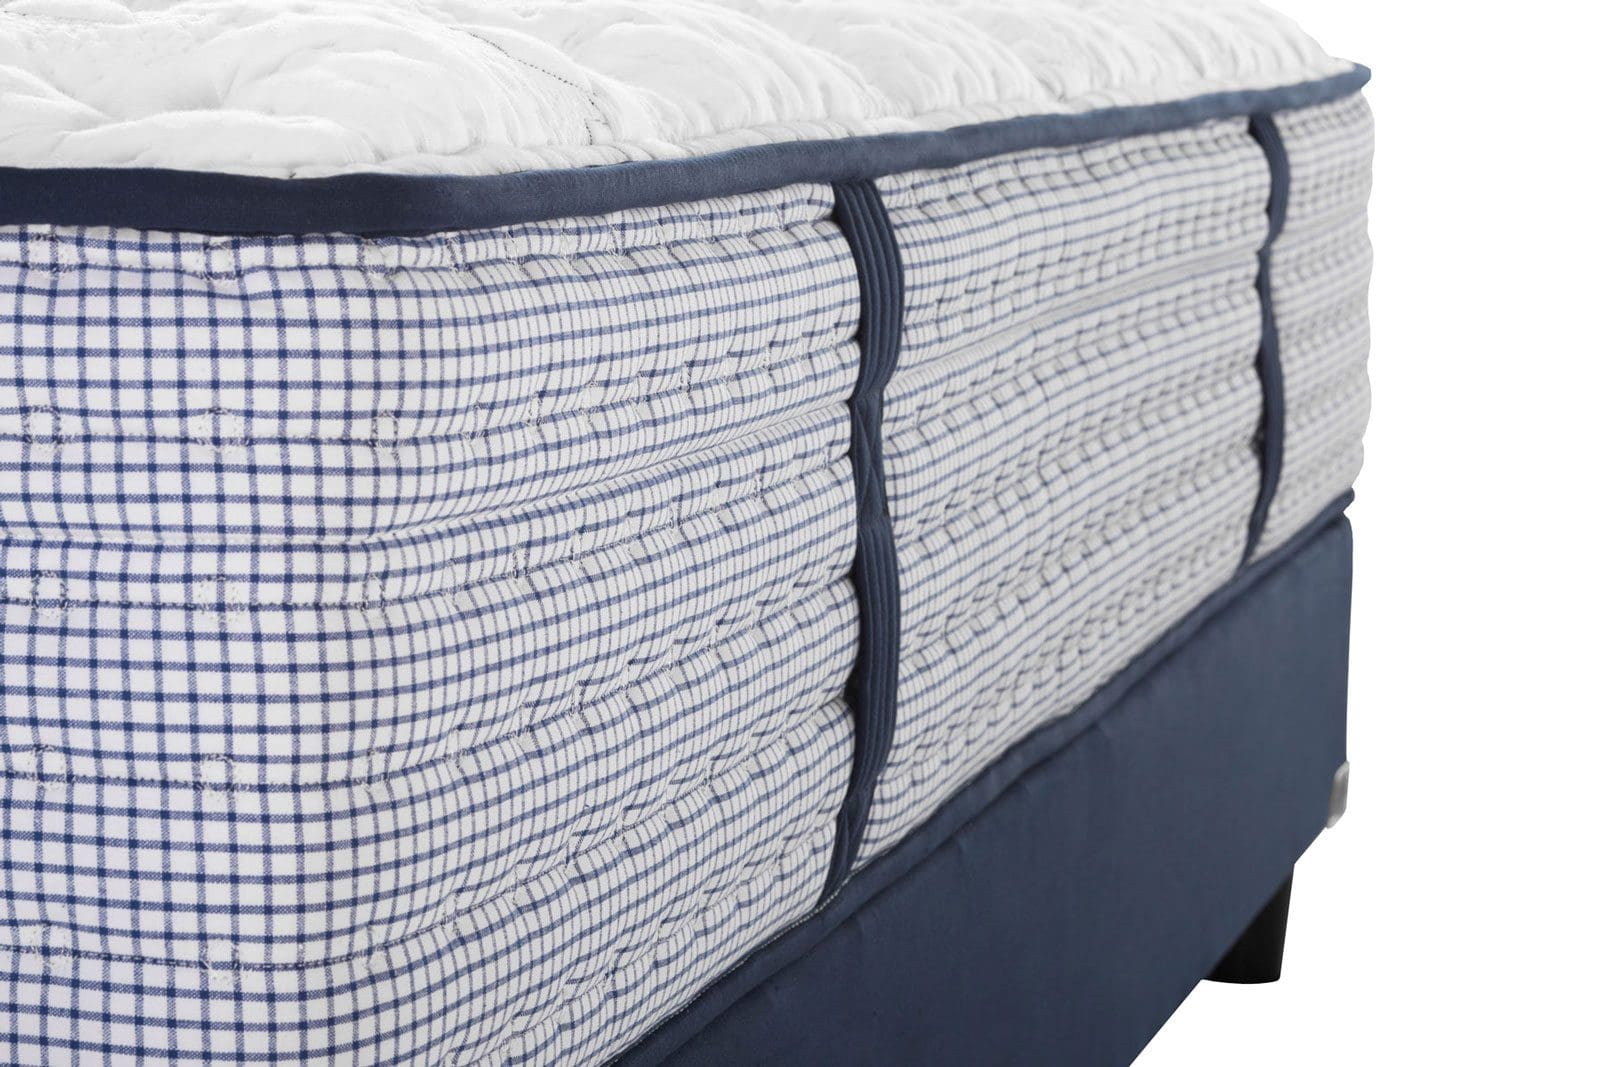 montara luxury firm mattress in denver colorado